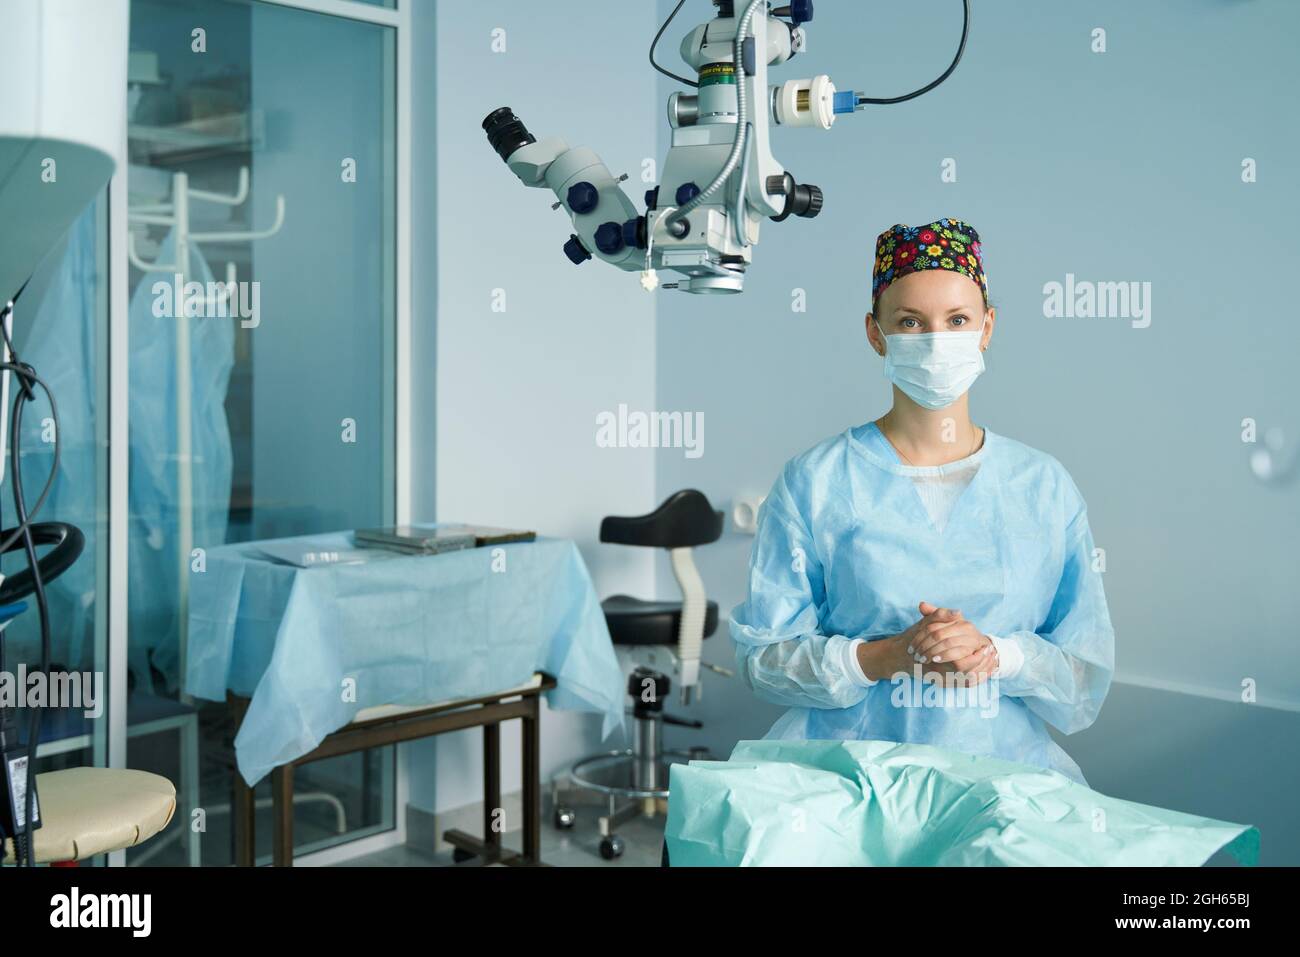 Erwachsene Ärztin in einer chirurgischen Uniform und sterilen Maske, die während des Kliniksitzens auf die Kamera schaut Stockfoto